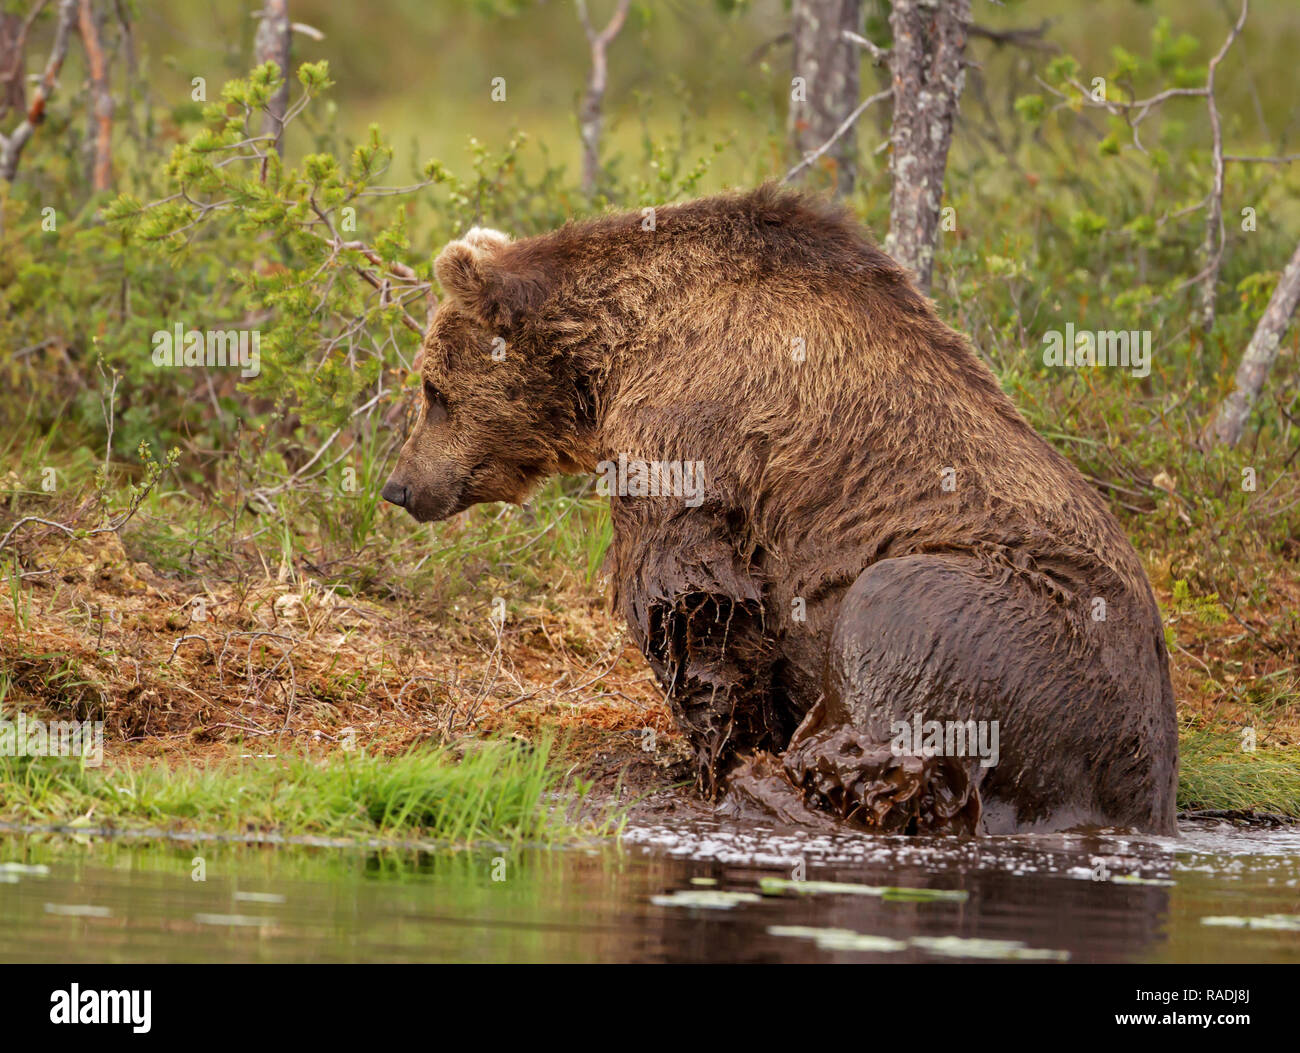 Eurasian orso bruno salendo sulla riva da acqua dopo il nuoto in stagno, estate in Finlandia. Foto Stock